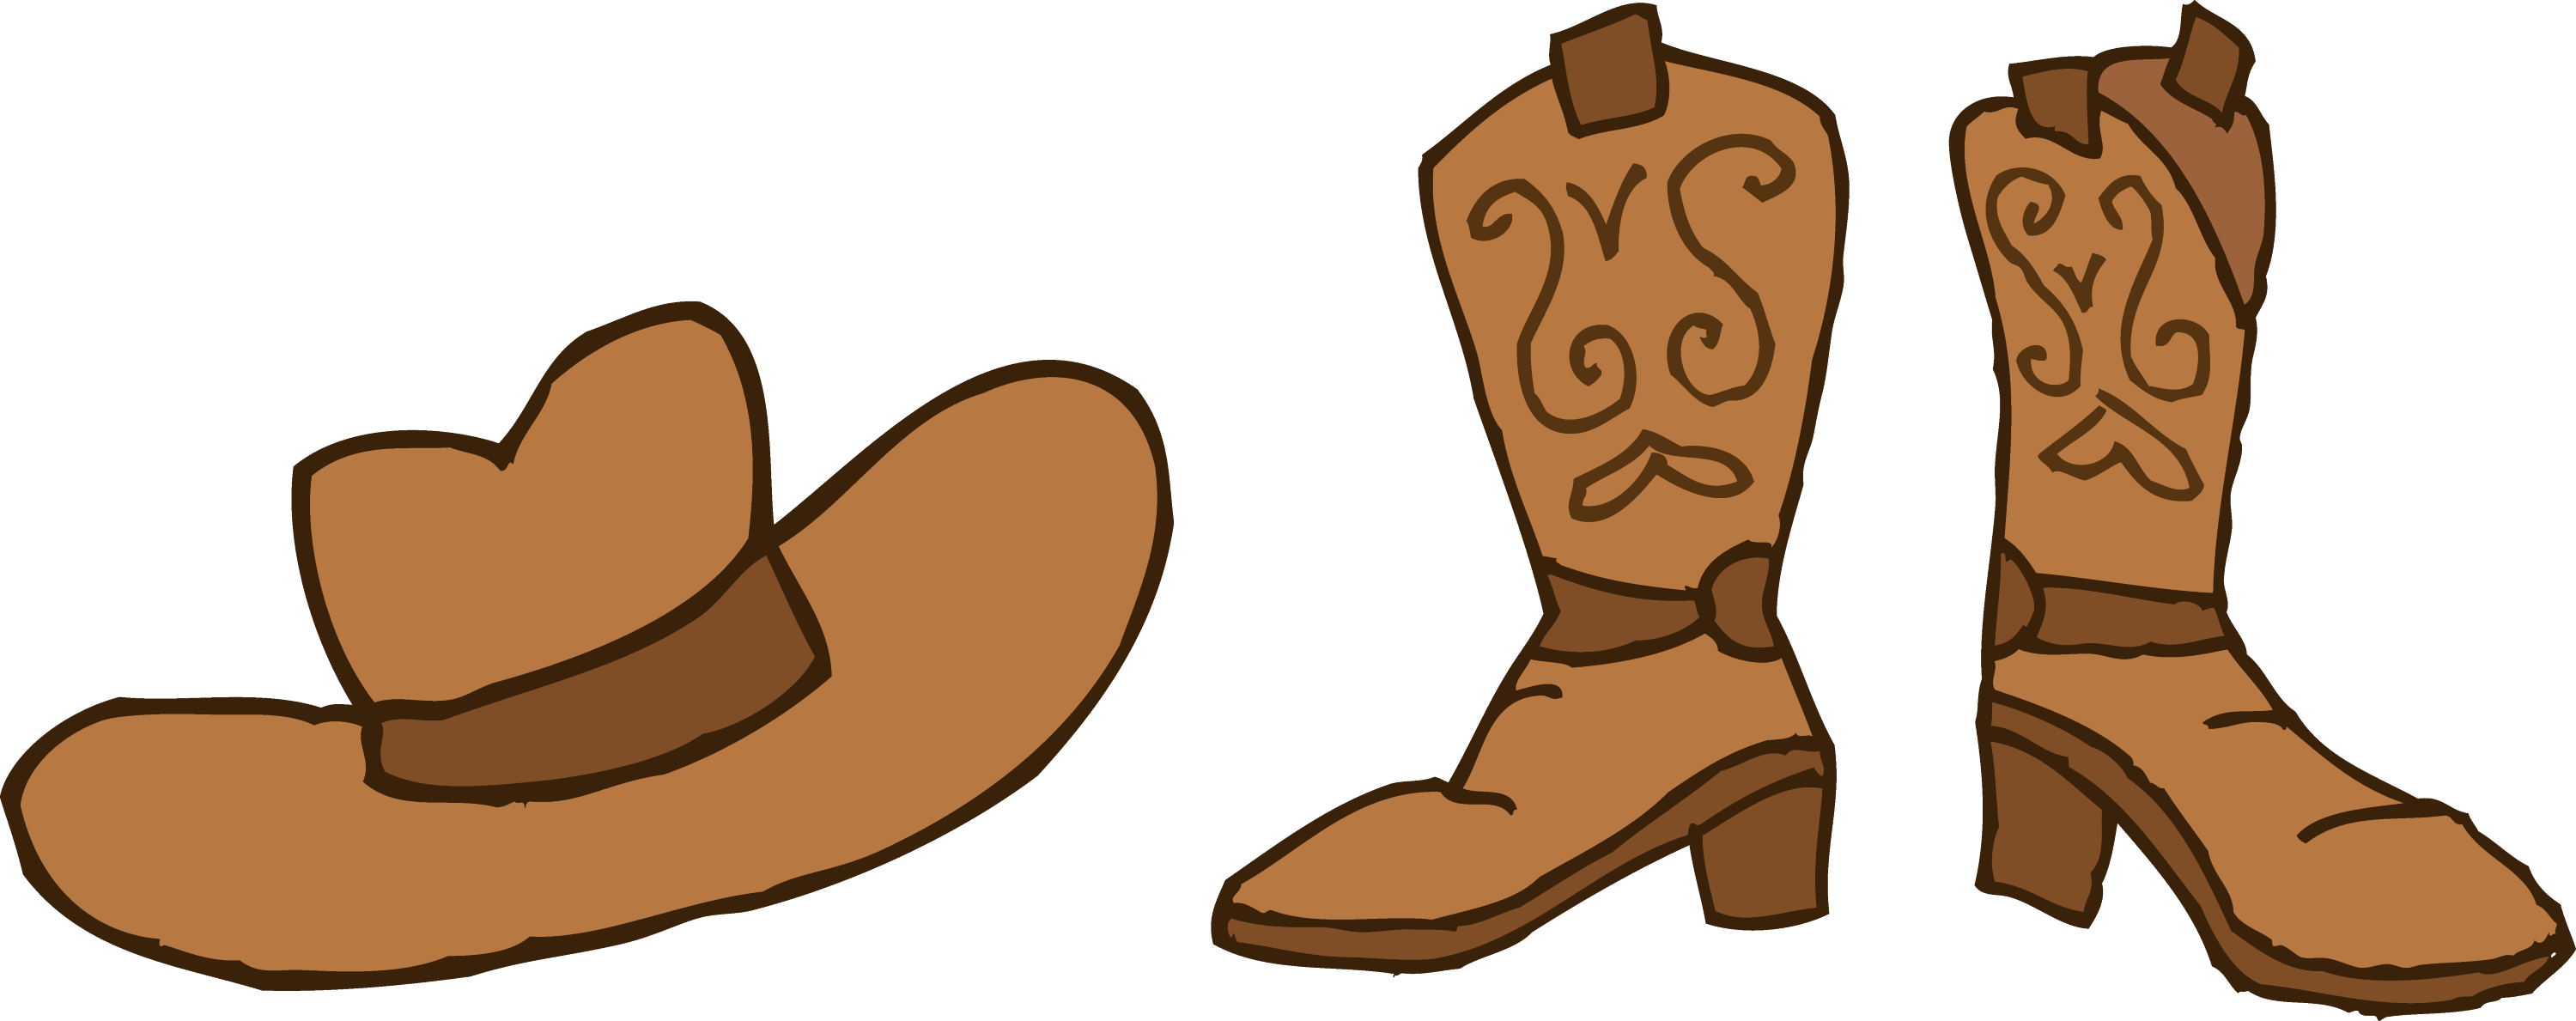 clipart cowboy boots - photo #15